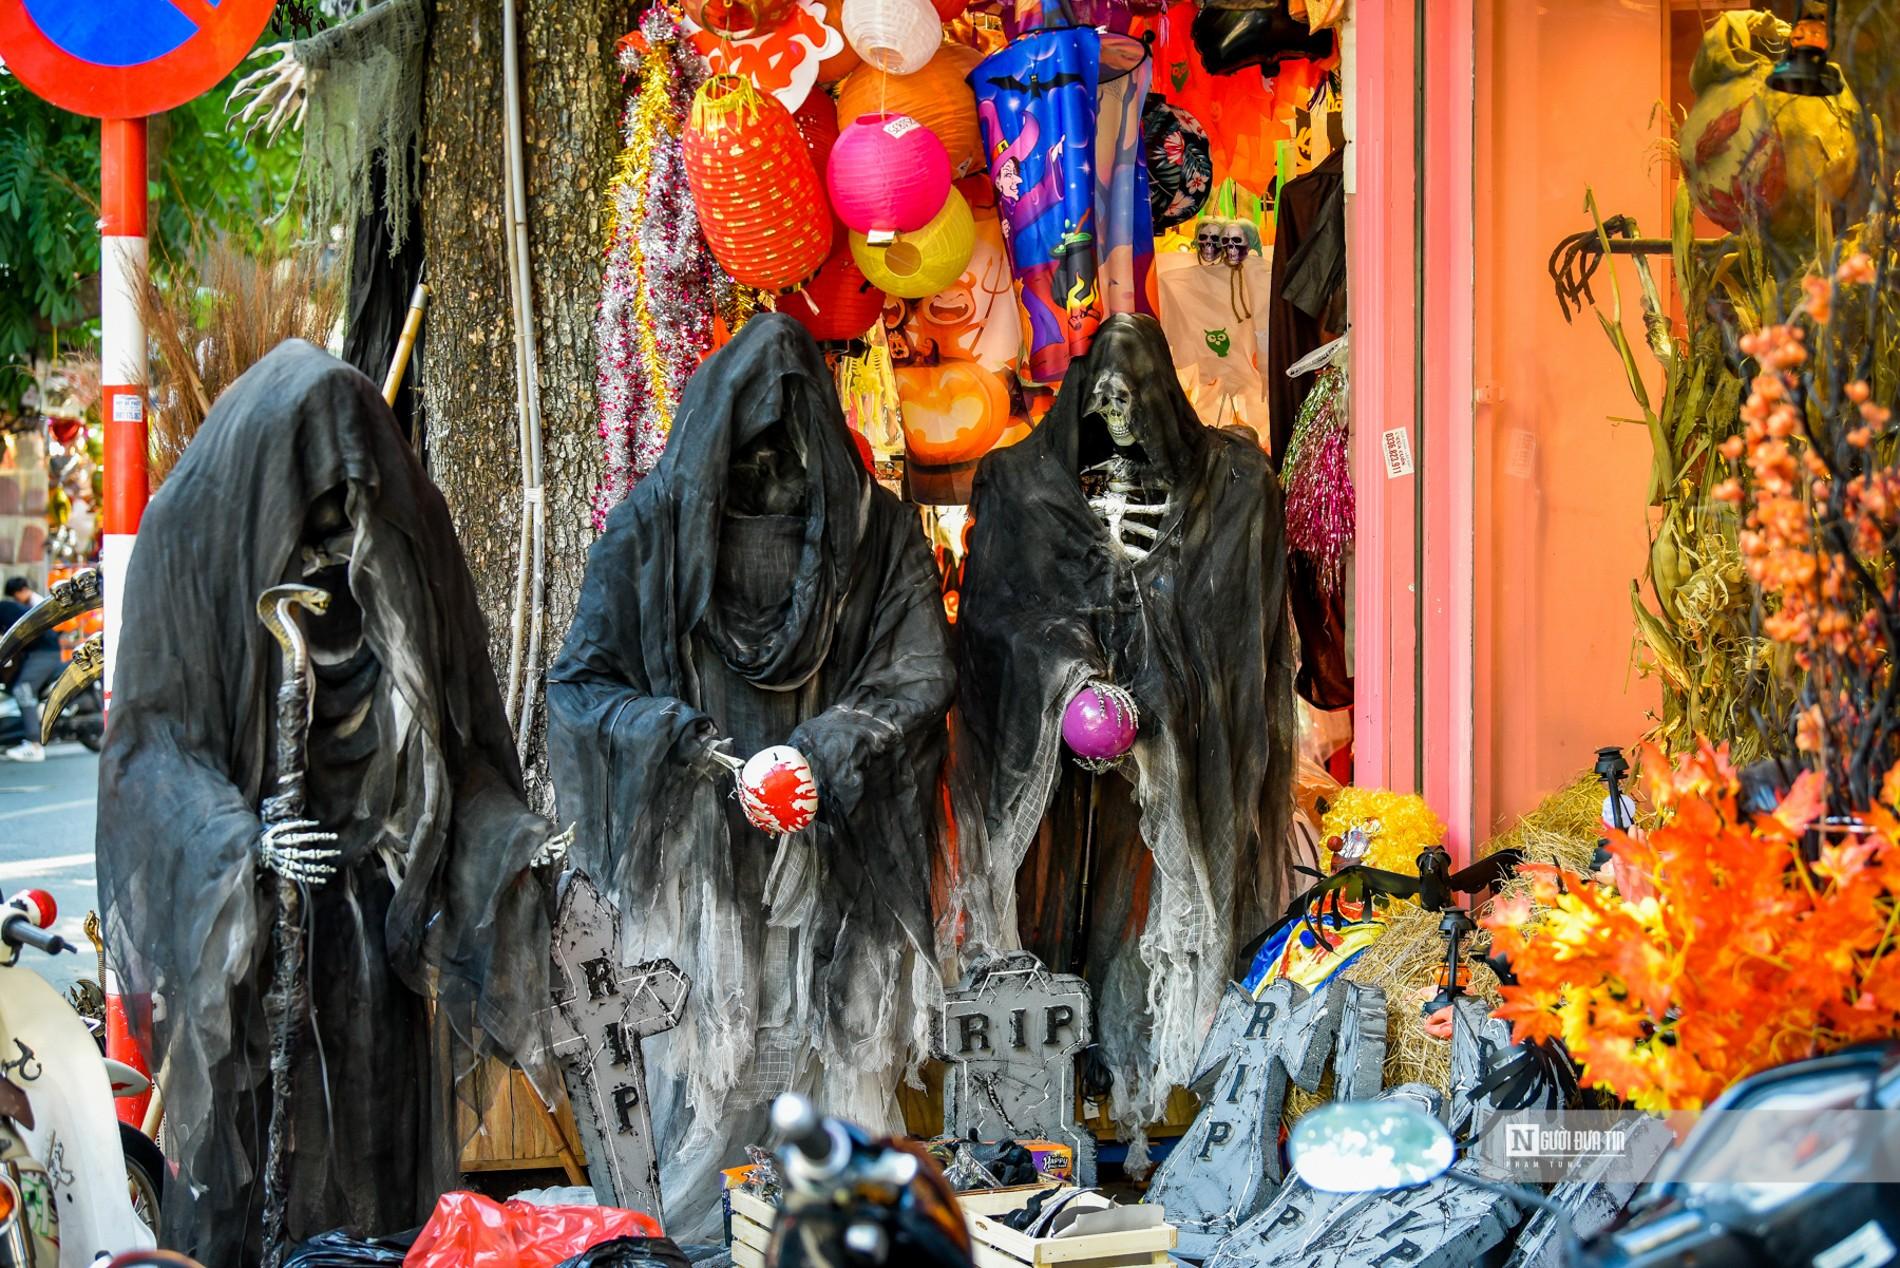 Tiêu dùng & Dư luận - Chủ nghĩa tiêu dùng nhìn từ lễ hội Halloween ngốn tiền giới trẻ